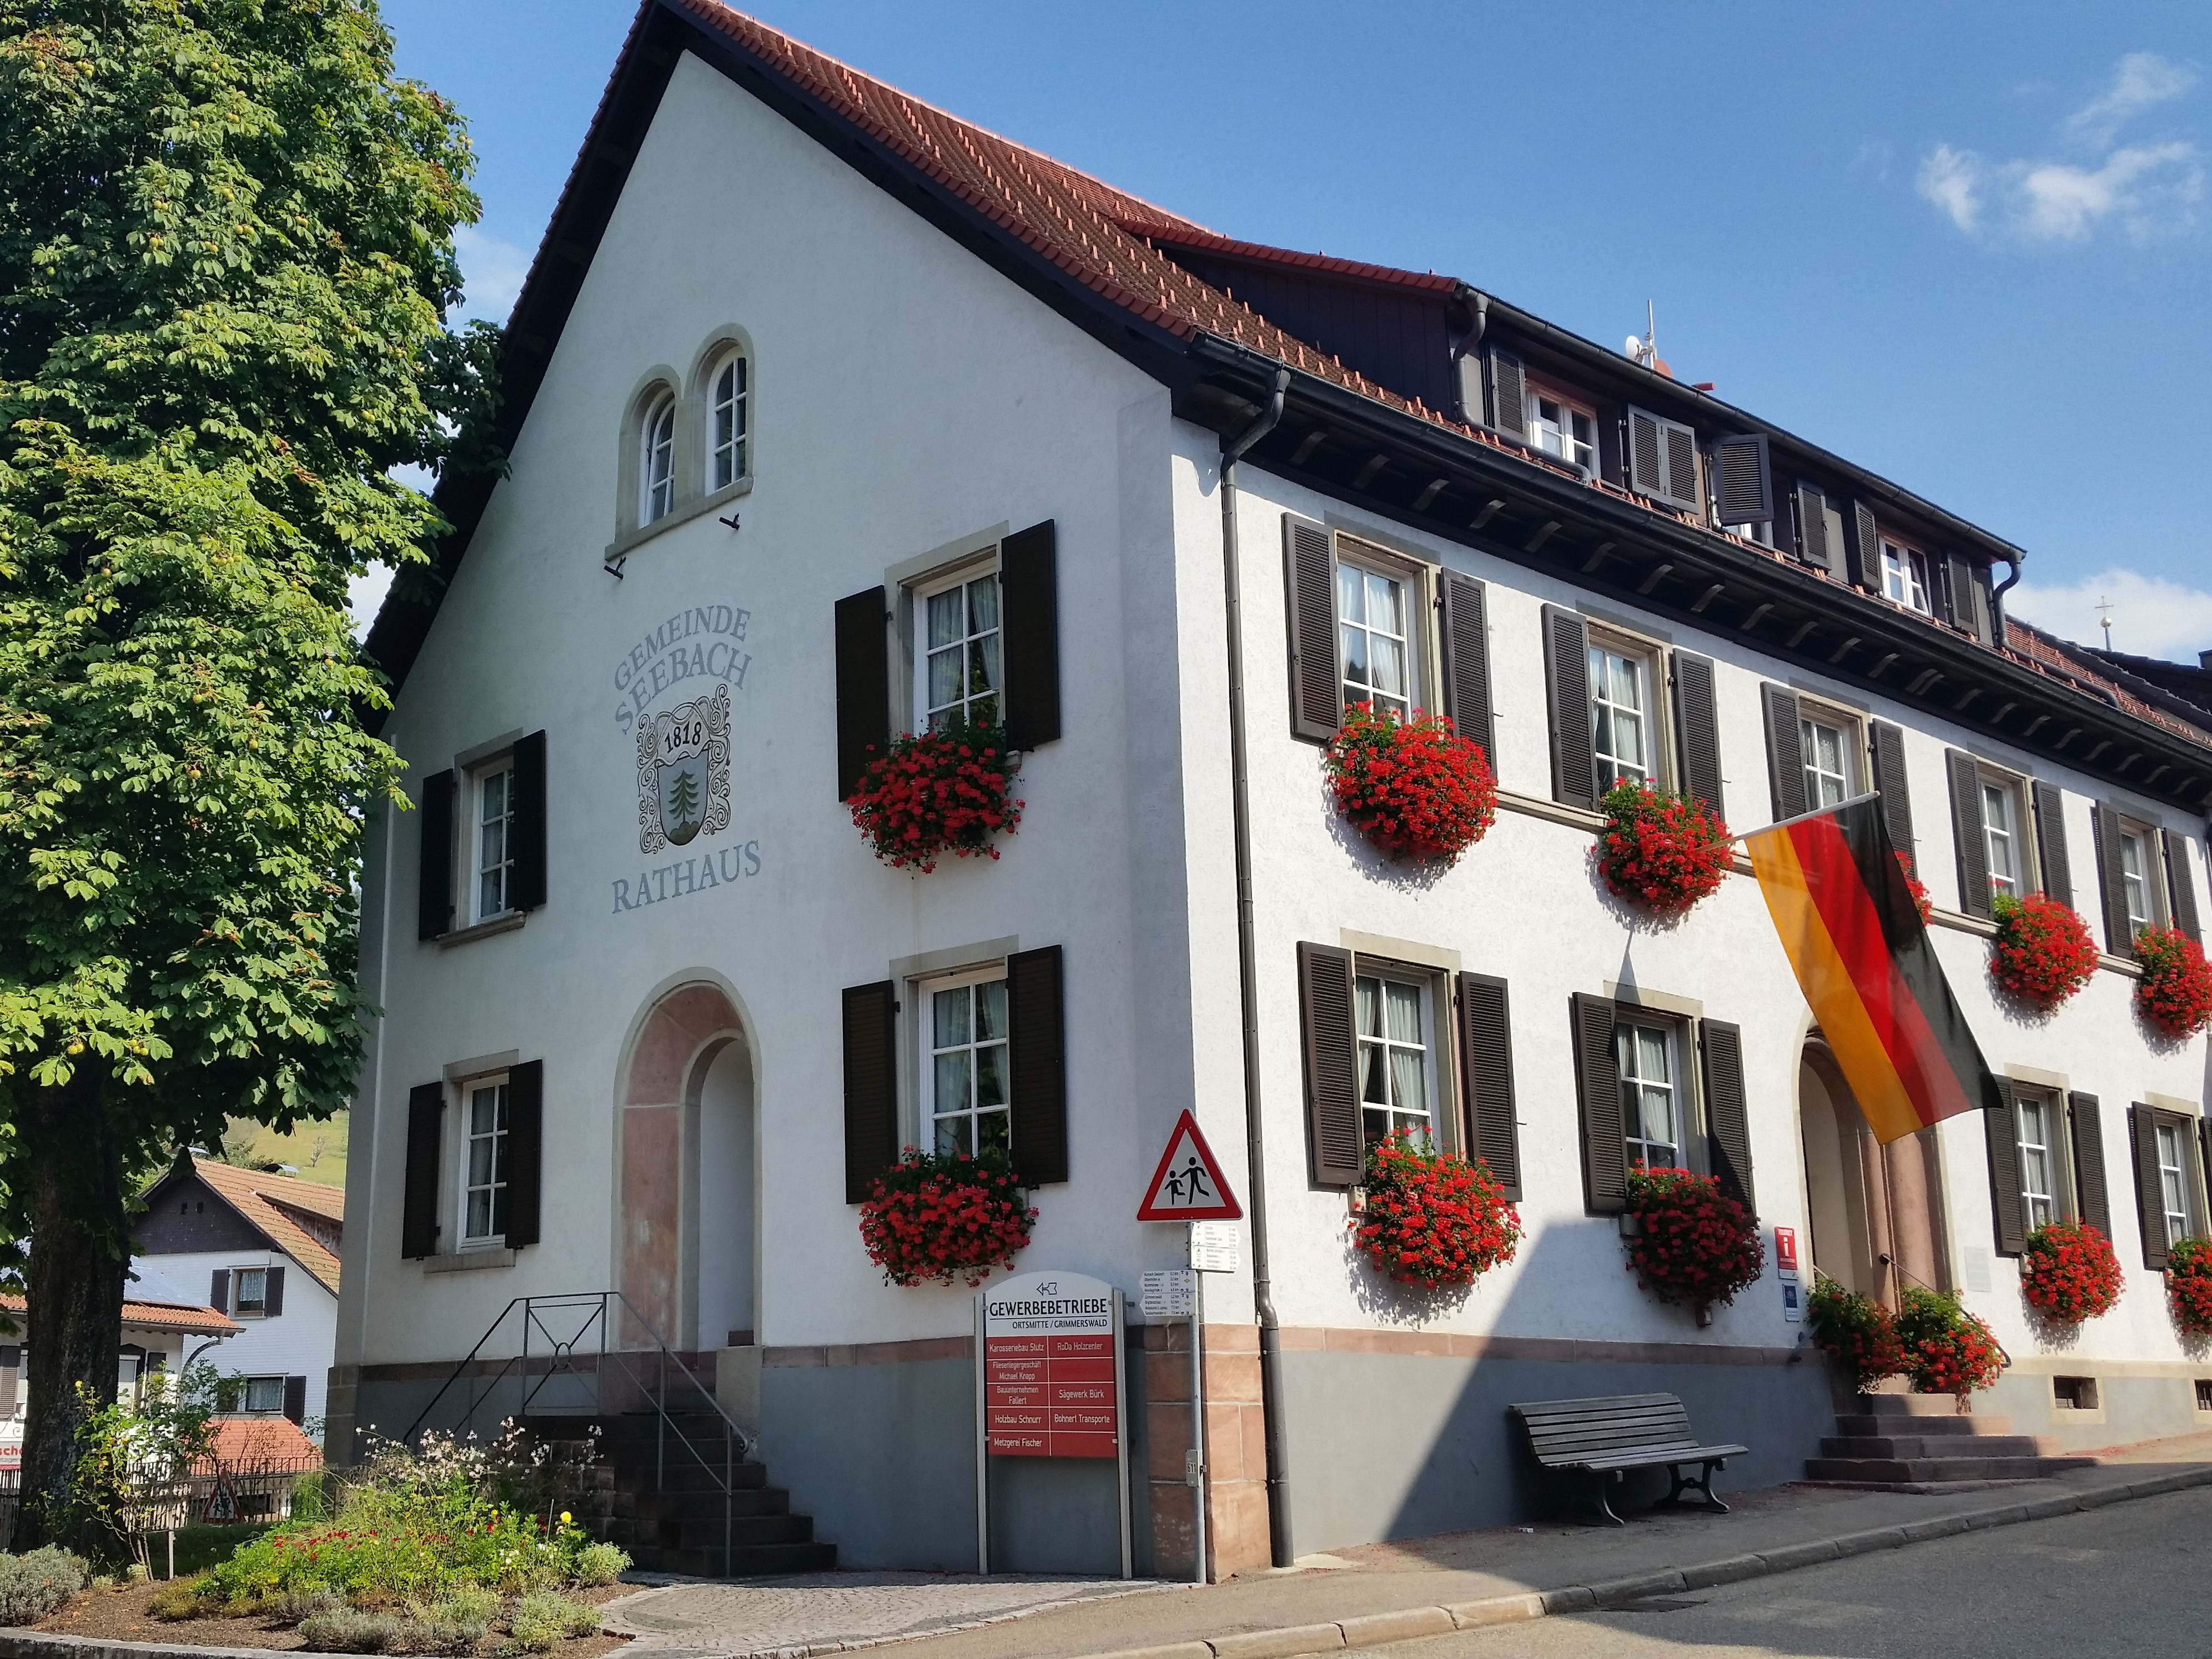                                                     Rathaus Seebach                                    